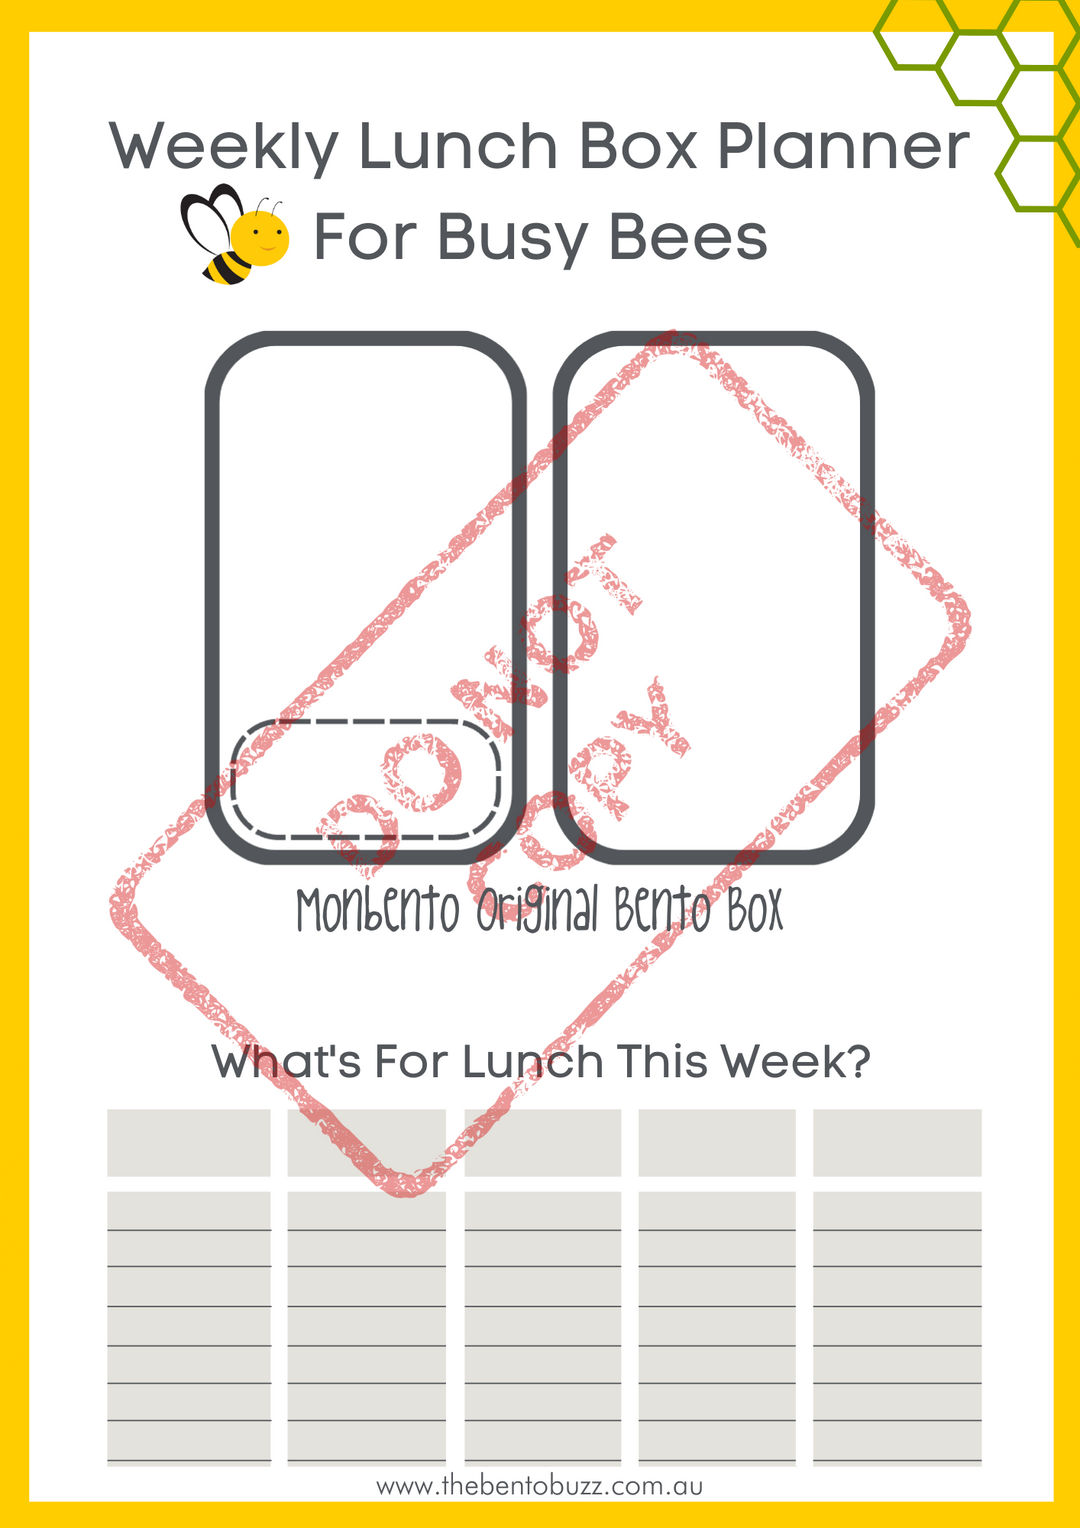 Download & Print Lunch Box Planner - Monbento Original